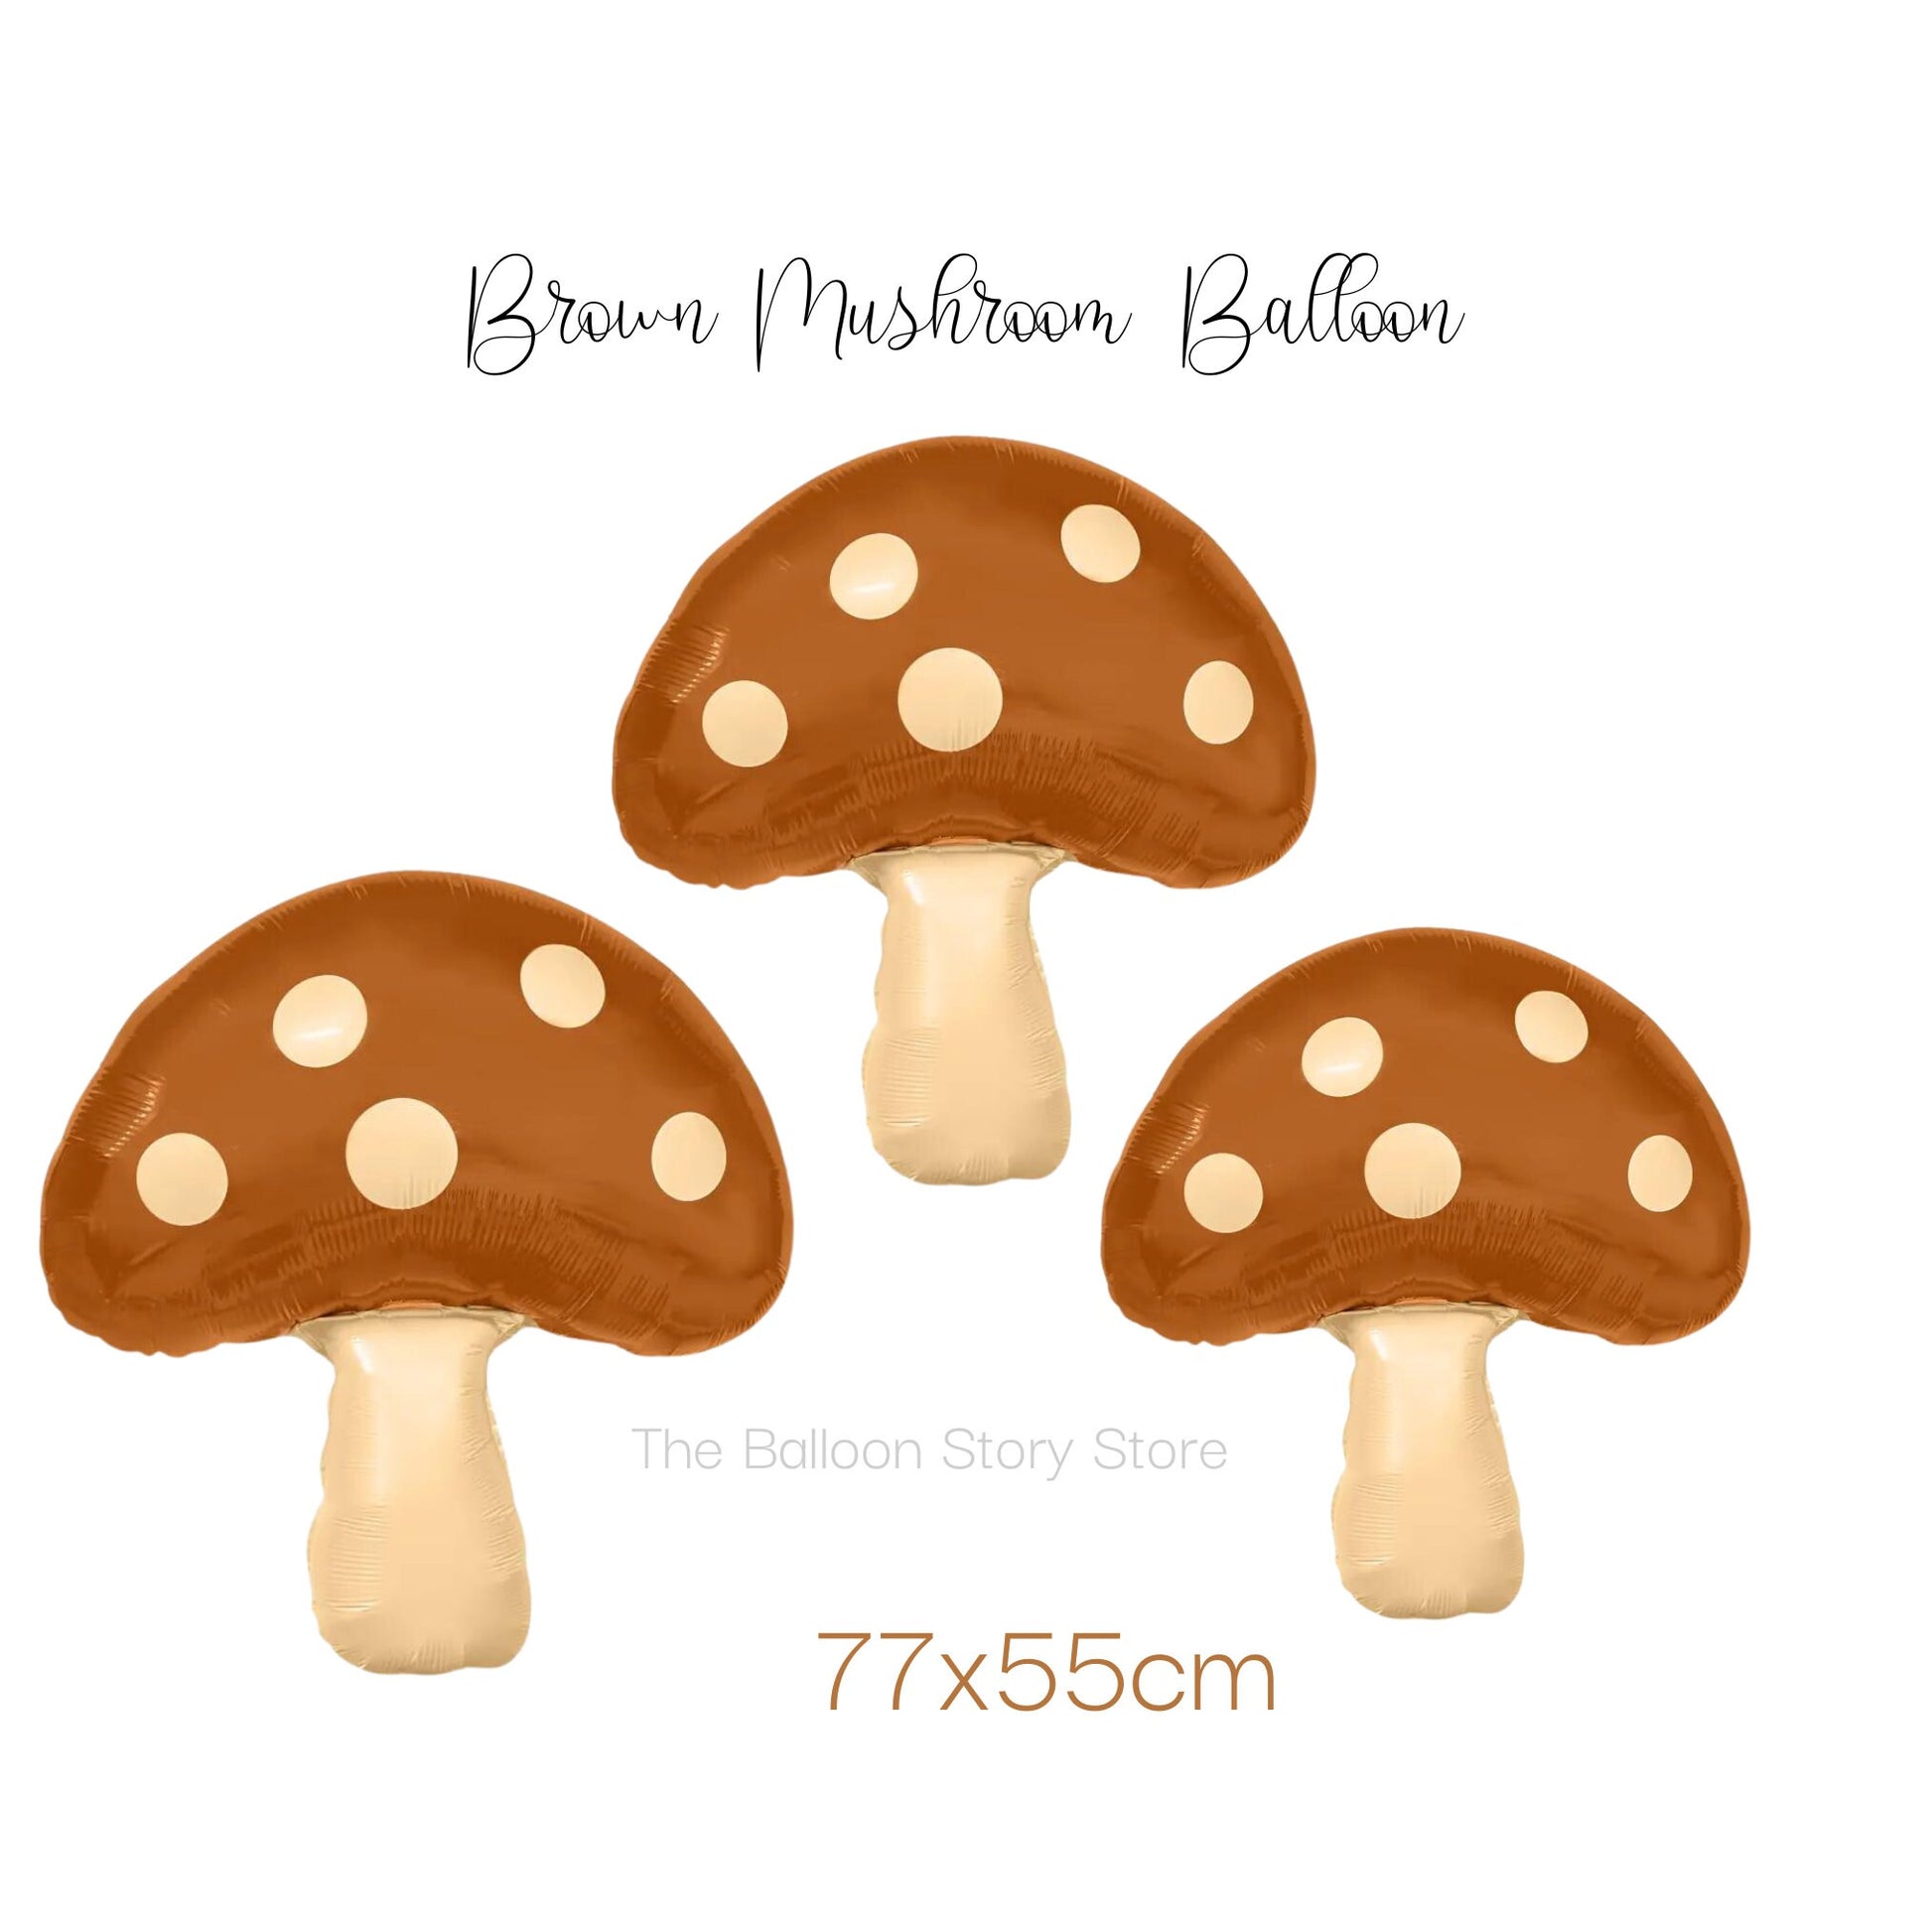 Brown Mushroom foil Balloon, neutral colour mushroom balloon.